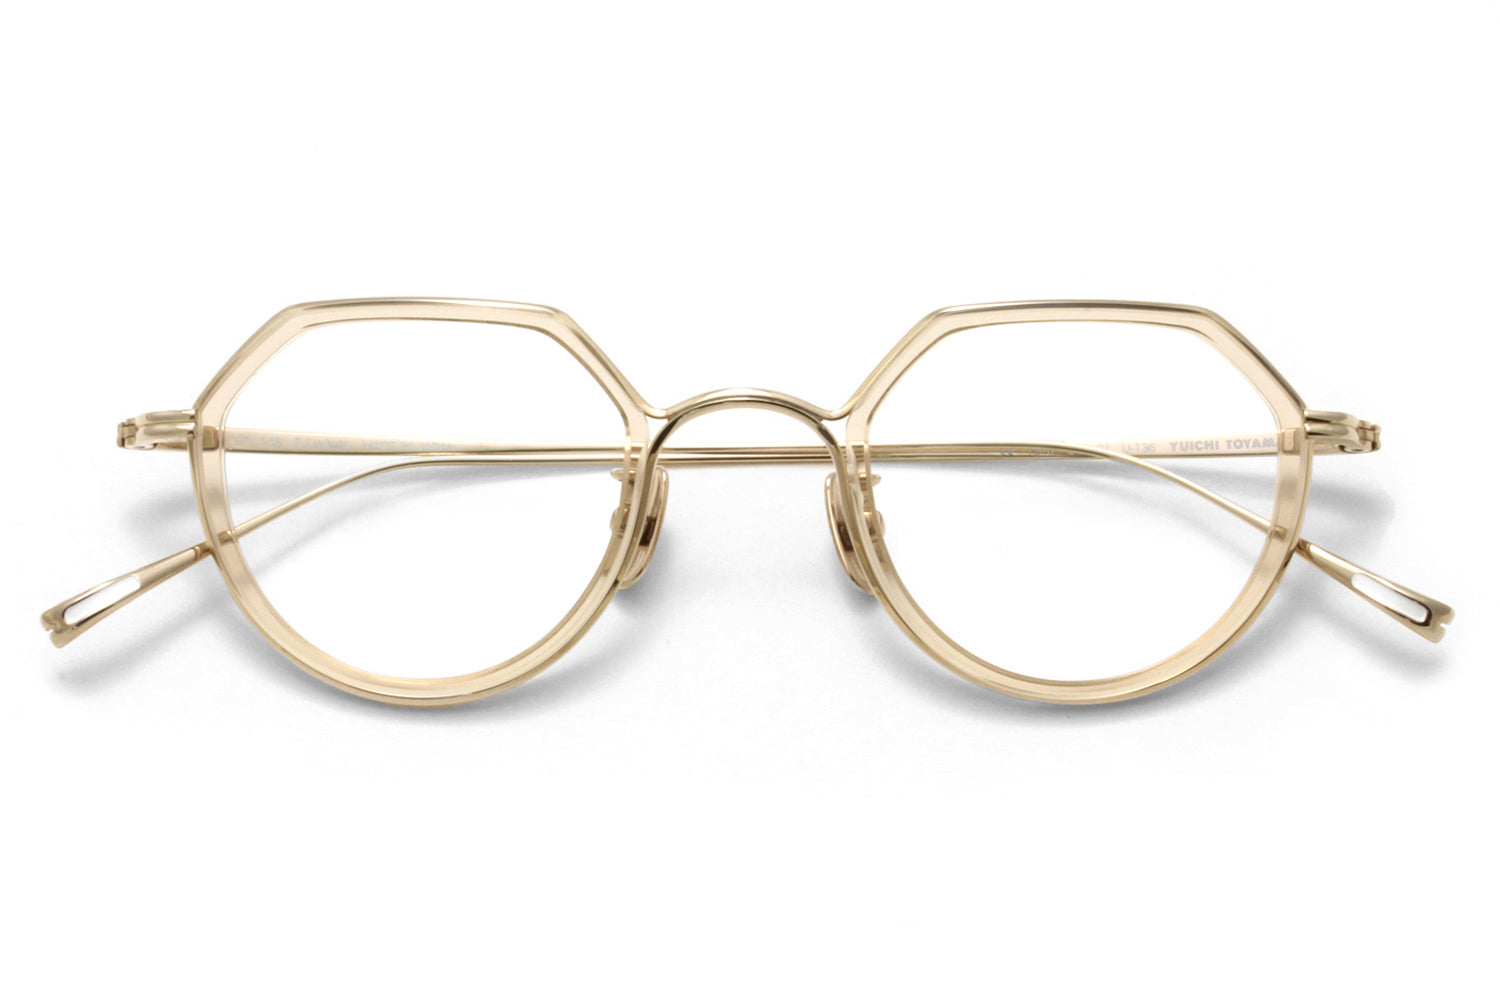 Yuichi Toyama - F. Ludwig (U-136) Eyeglasses | Specs Collective